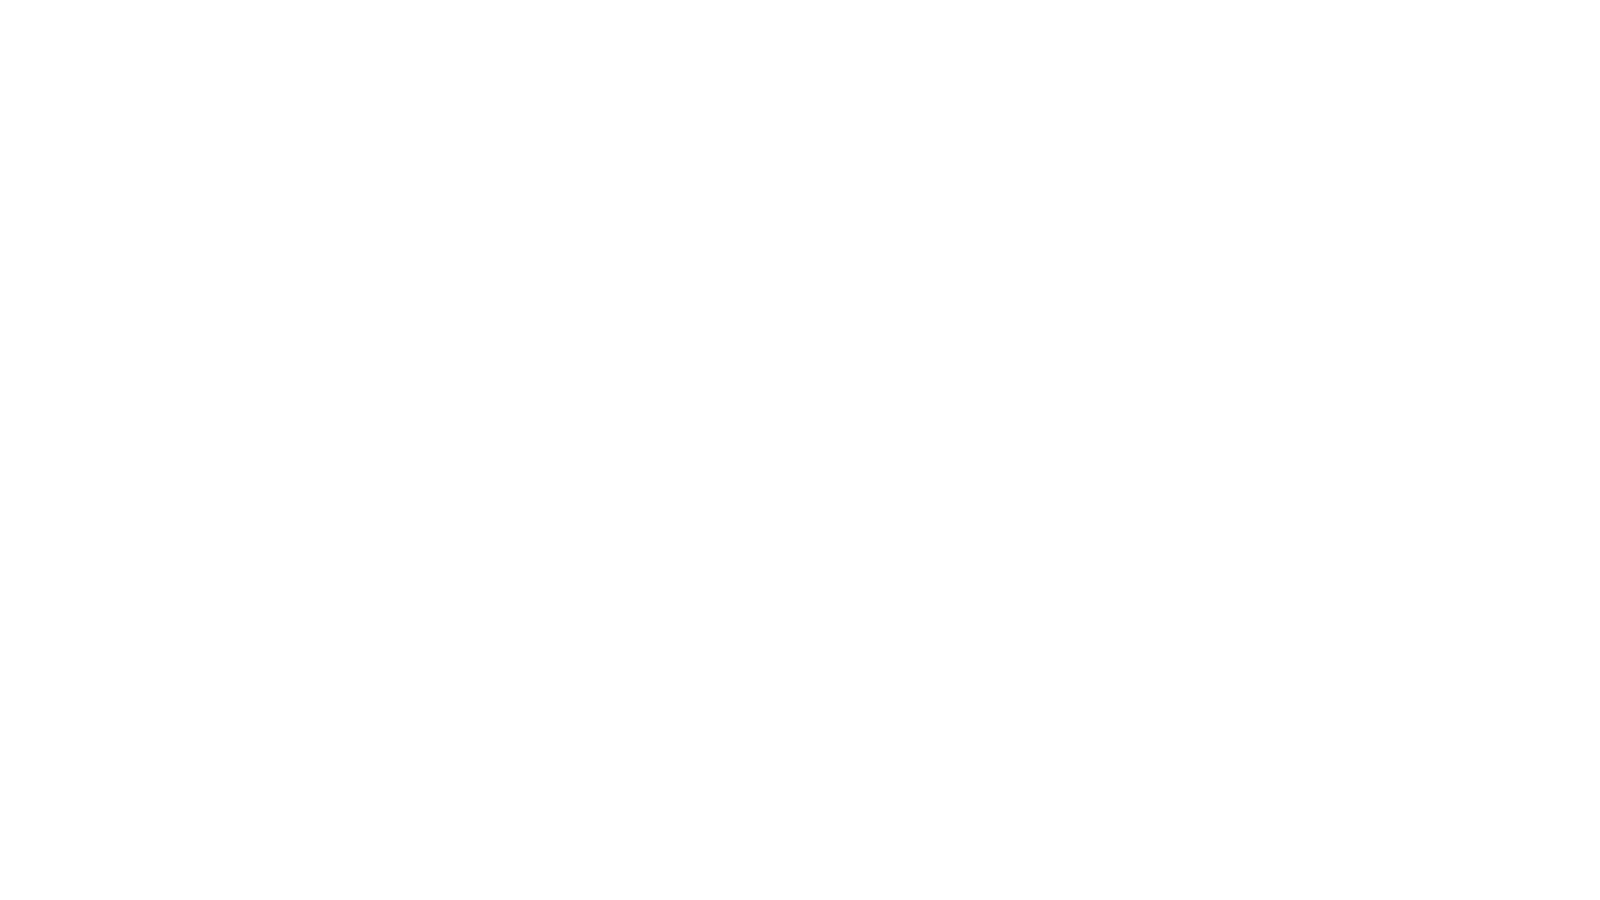 Slf sleefs white logo